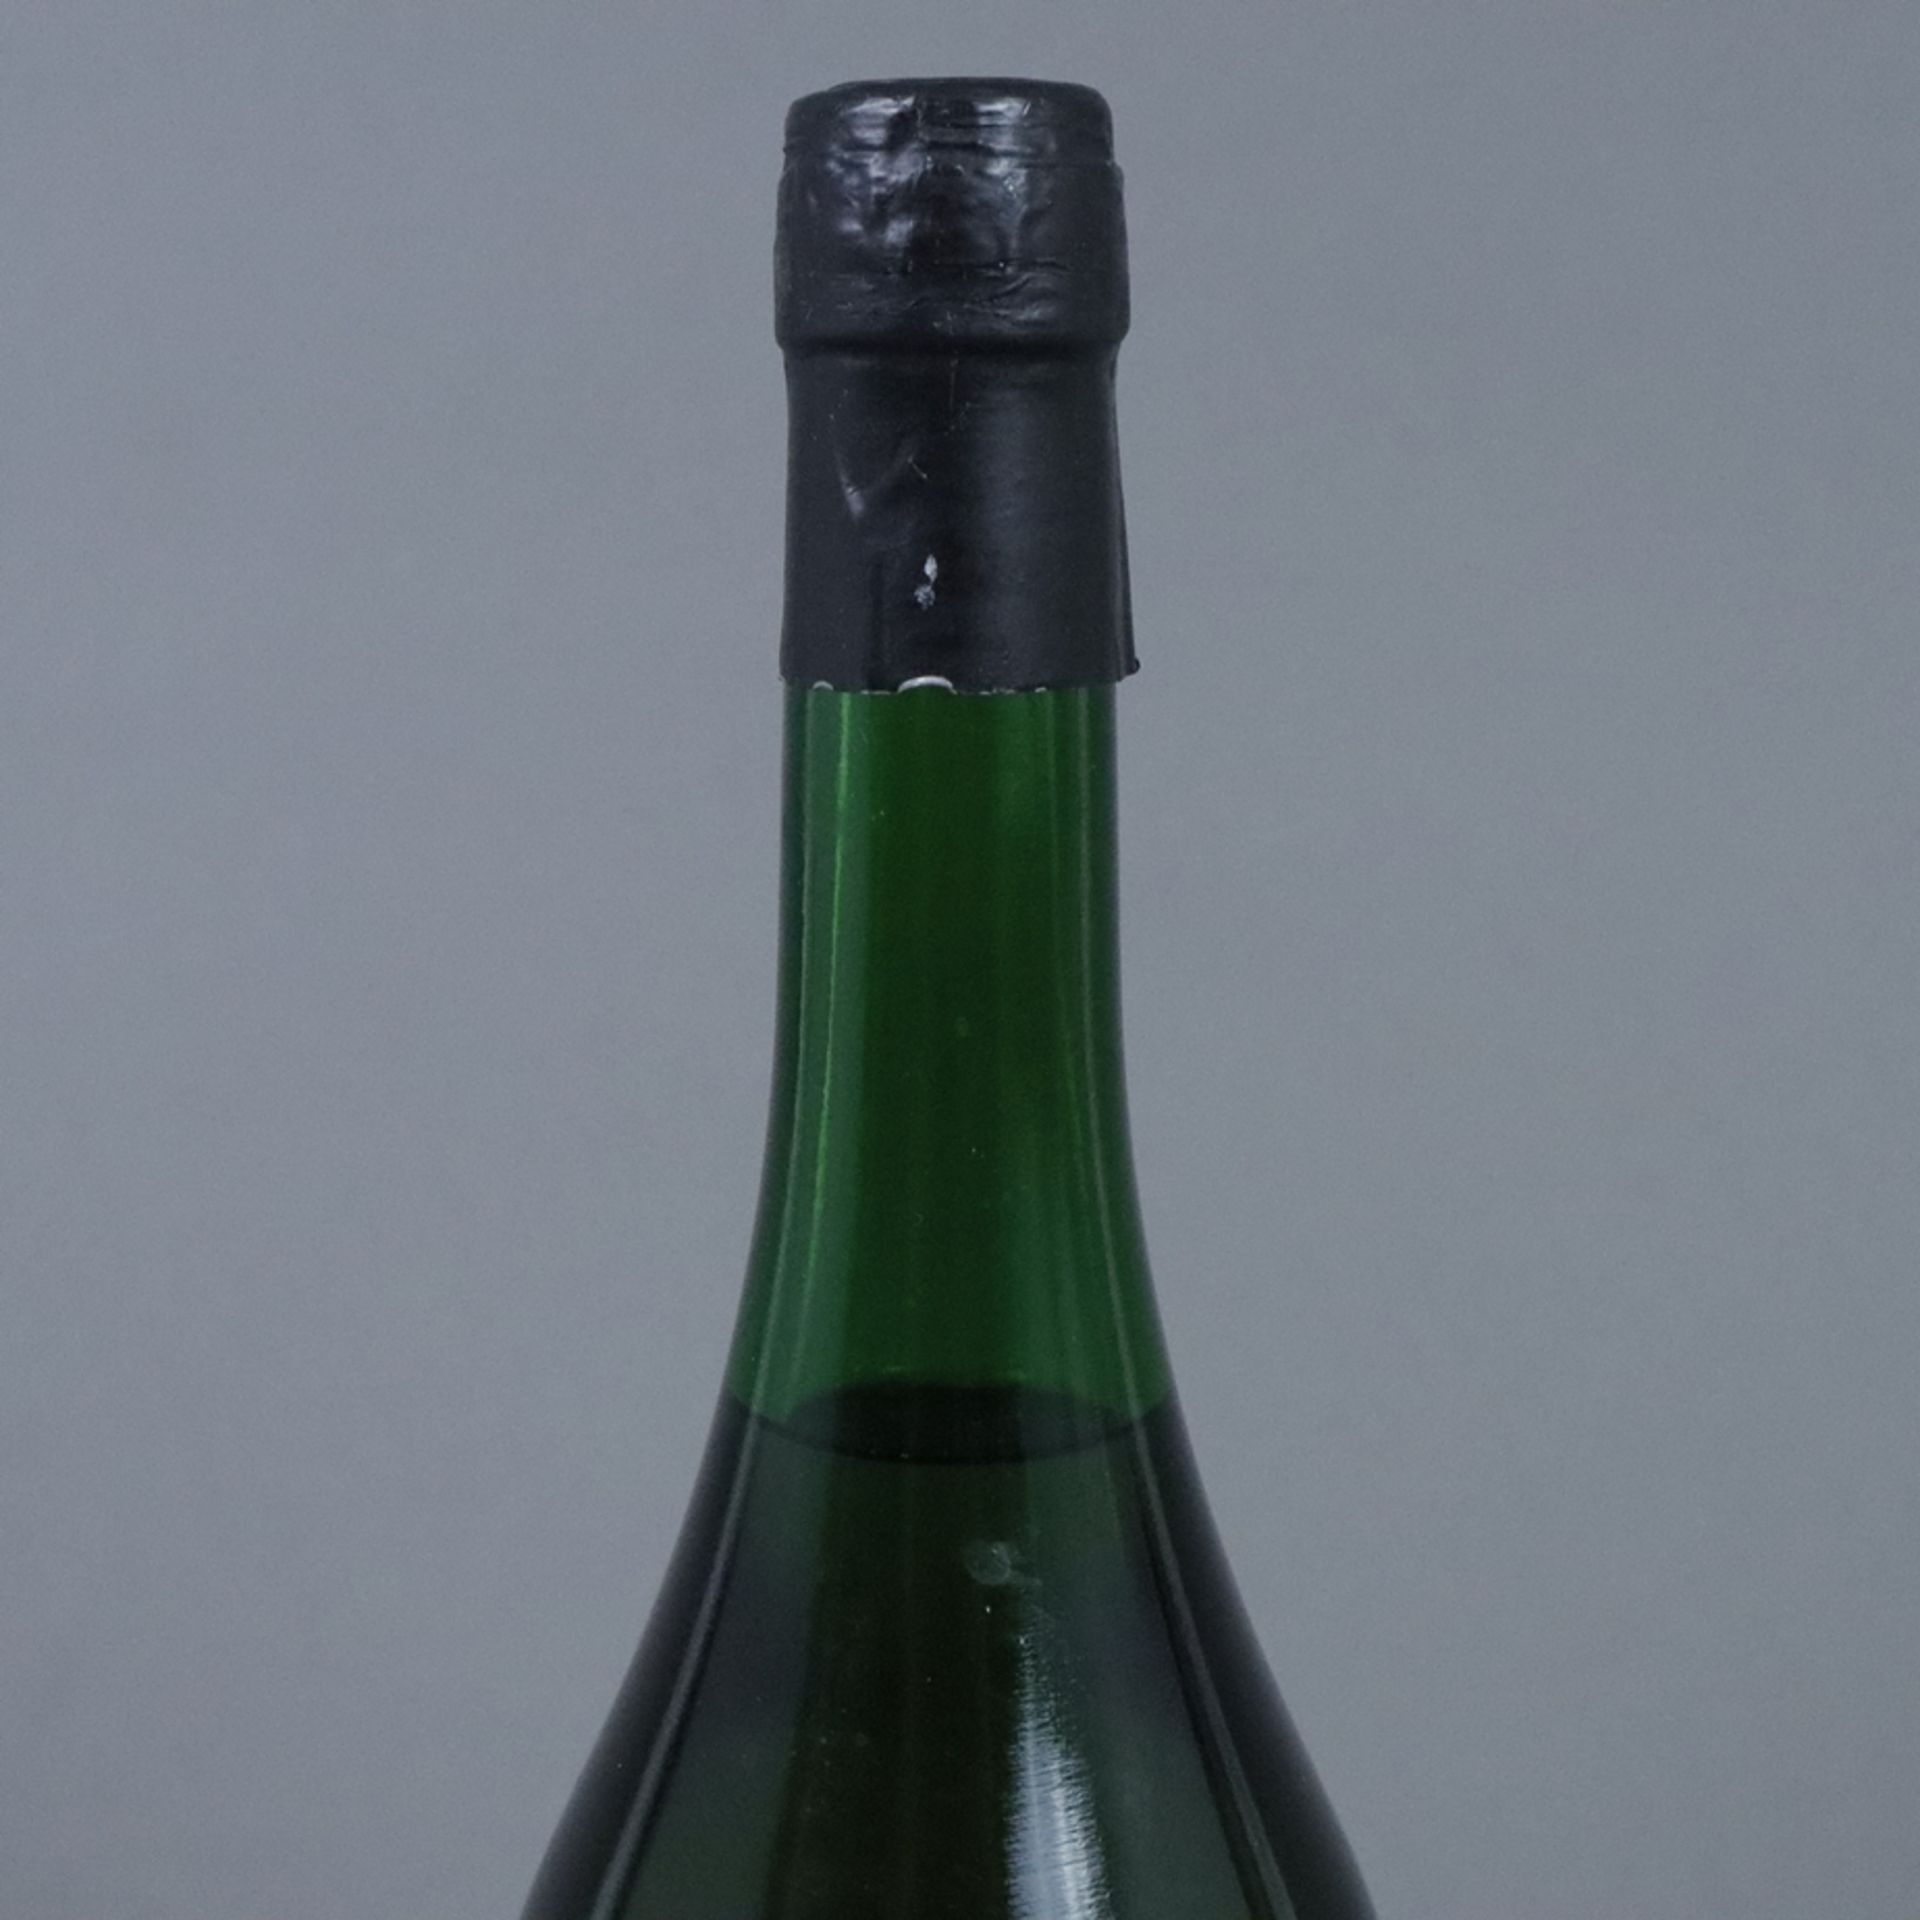 Vieux Marc de Champagne - Maison Deutz, Frankreich, alc. 42%, 75 cl, Füllstand: Upper Shoulder - Image 2 of 5